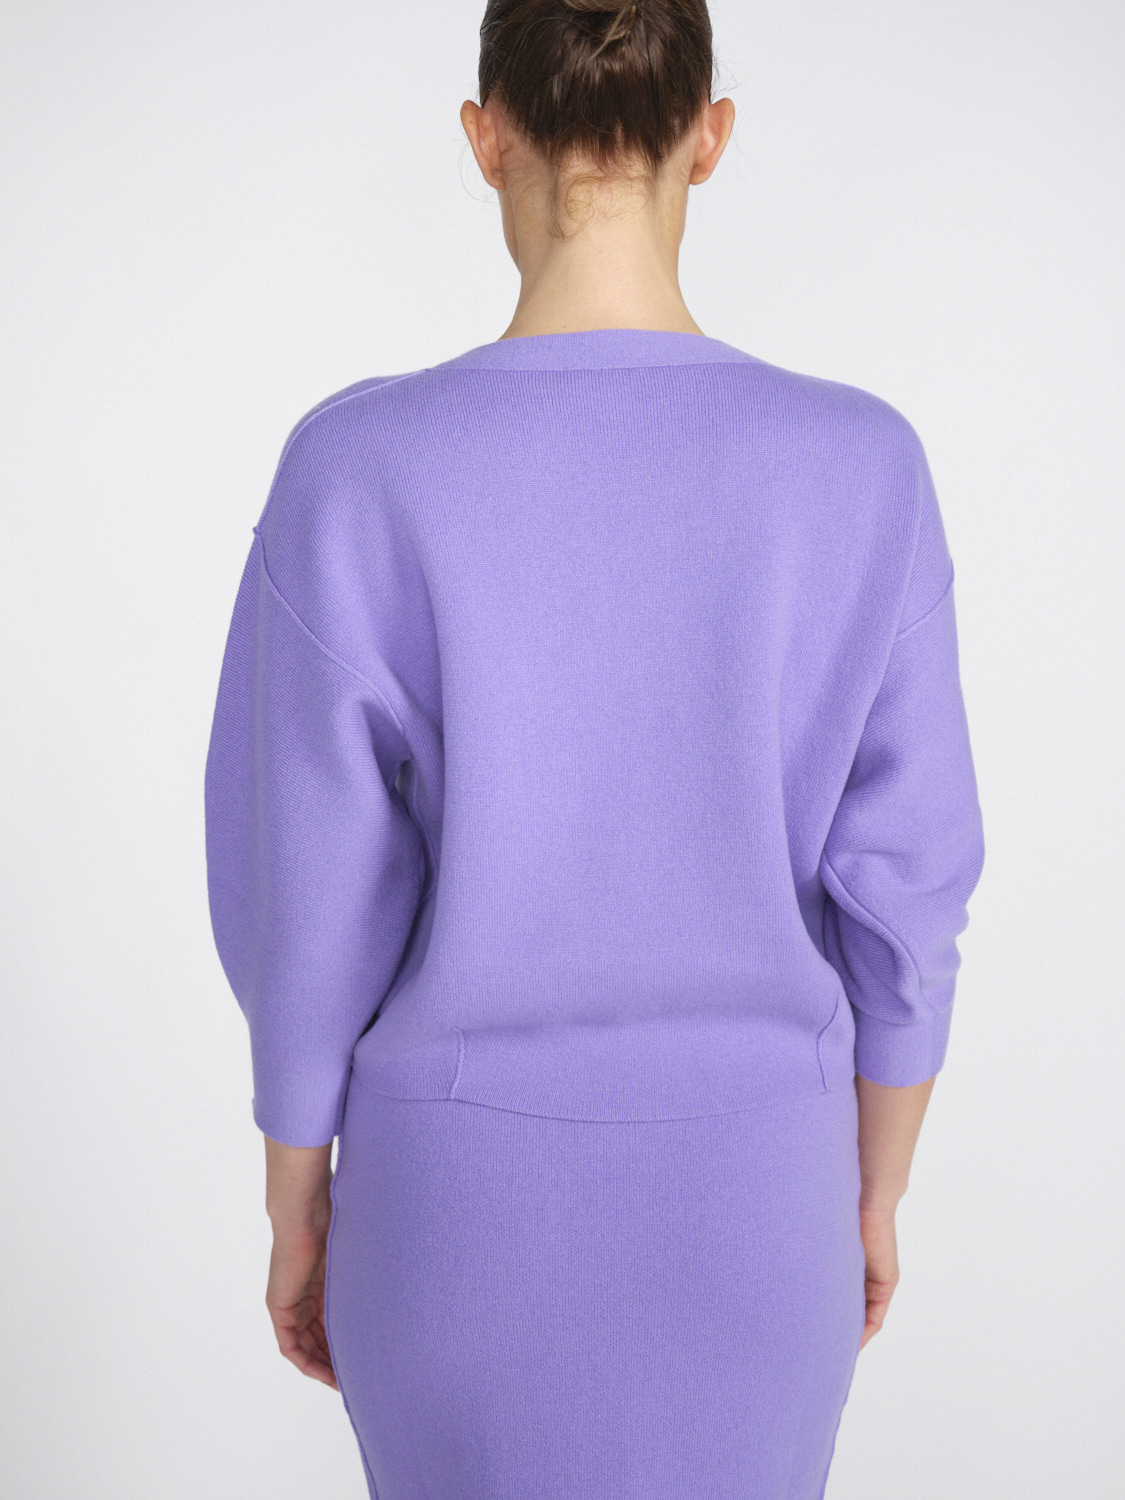 Iris von Arnim Arielle - Cropped cashmere jumper  lila S